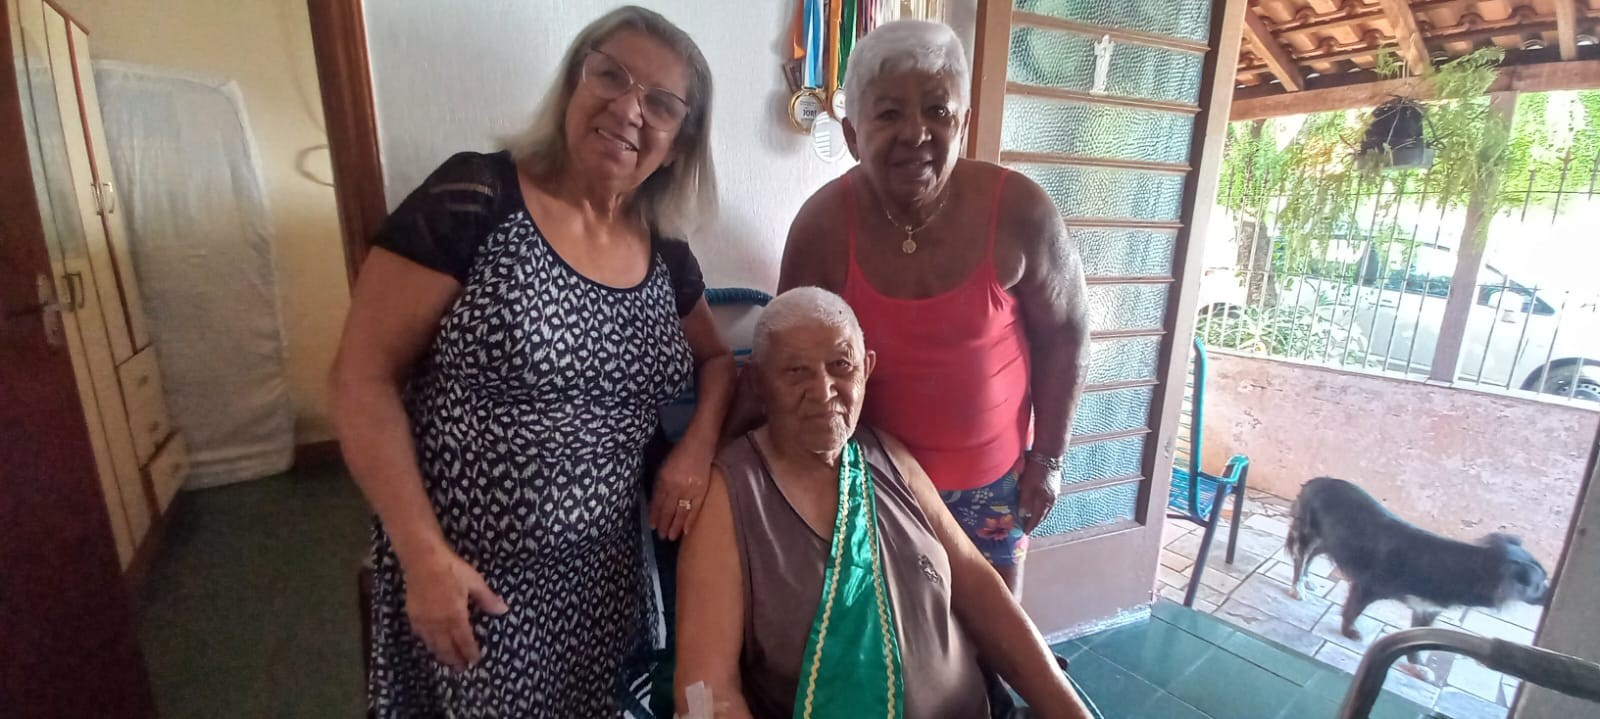 Com ânimo de sobra aos 101 anos, aposentado brinca sobre longevidade e espera visita no próximo ano: 'Se Deus quiser'